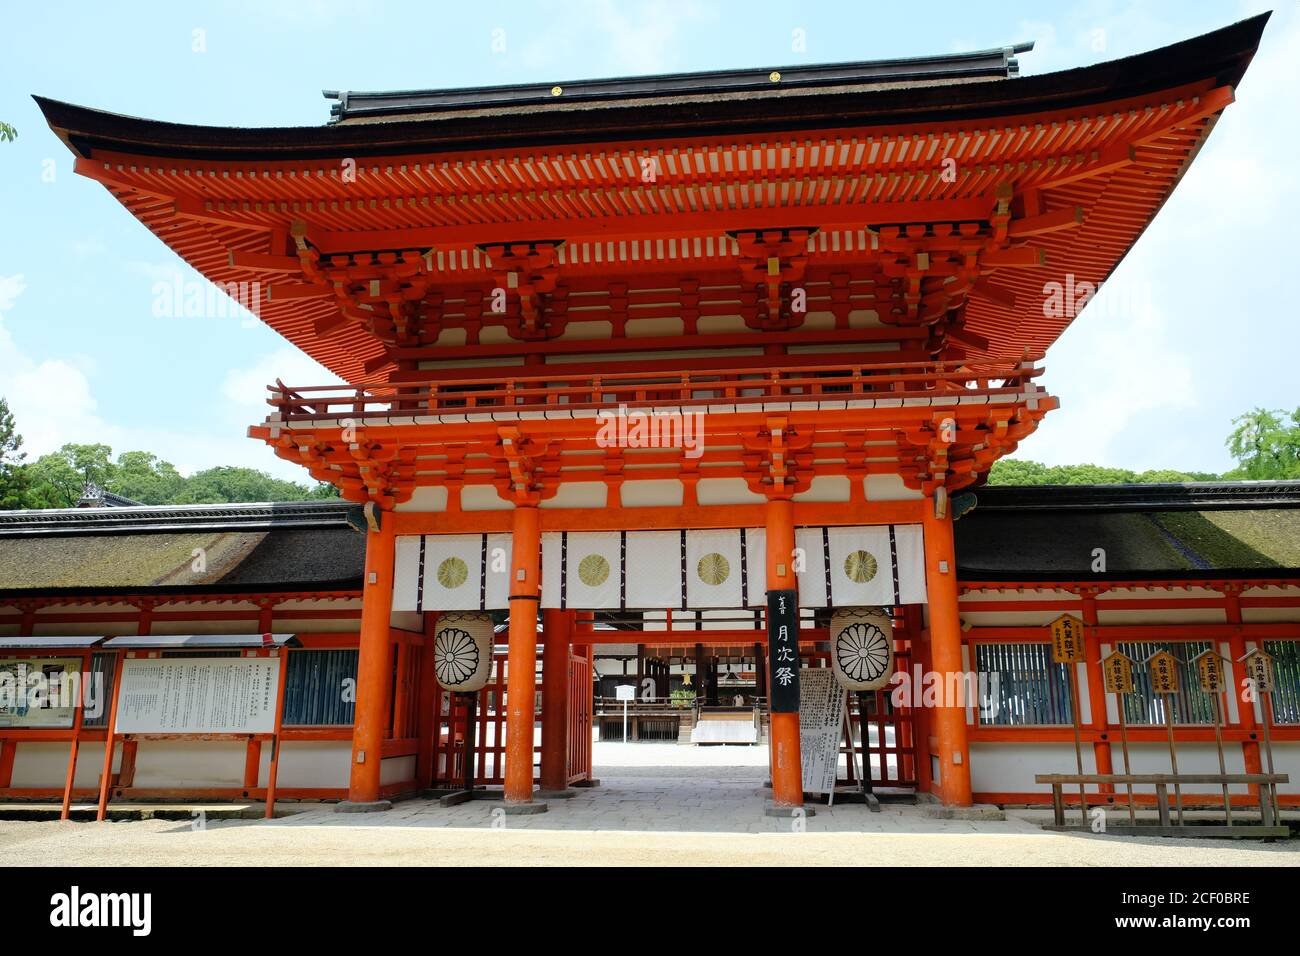 Kyoto Giappone - Shimogamo-Jinja santuario Shinto cancello d'ingresso Foto Stock